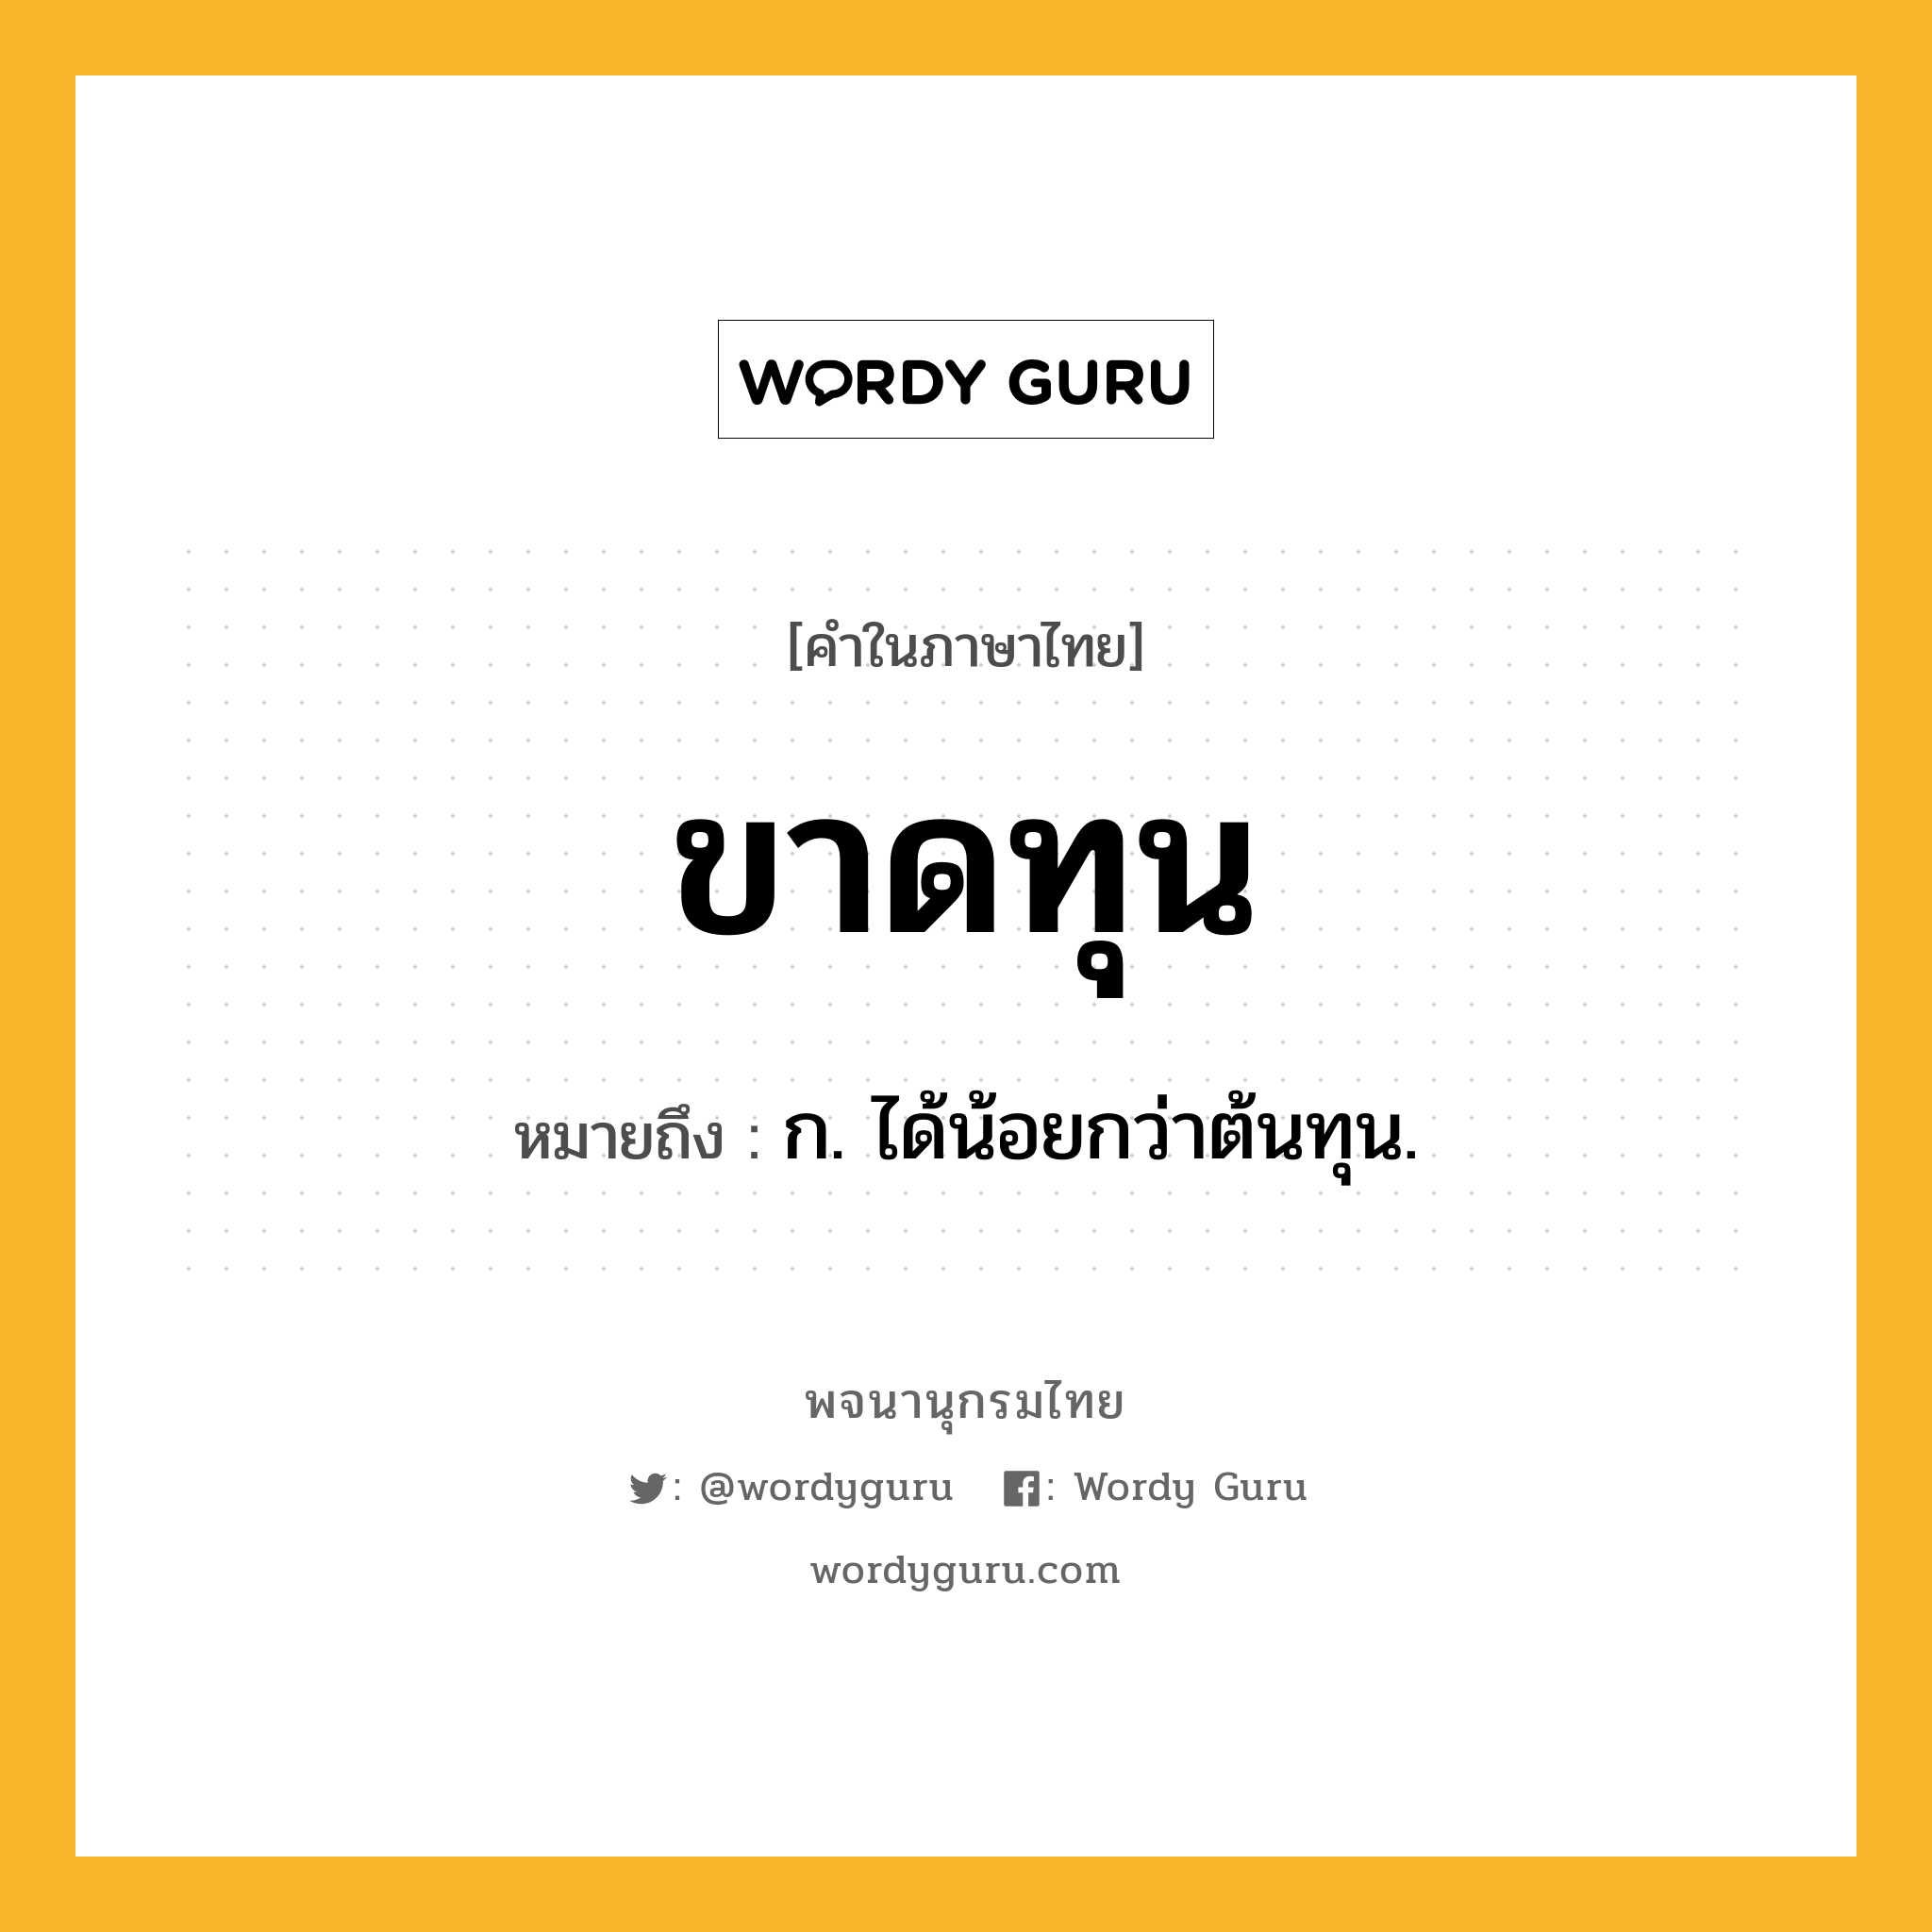 ขาดทุน หมายถึงอะไร?, คำในภาษาไทย ขาดทุน หมายถึง ก. ได้น้อยกว่าต้นทุน.